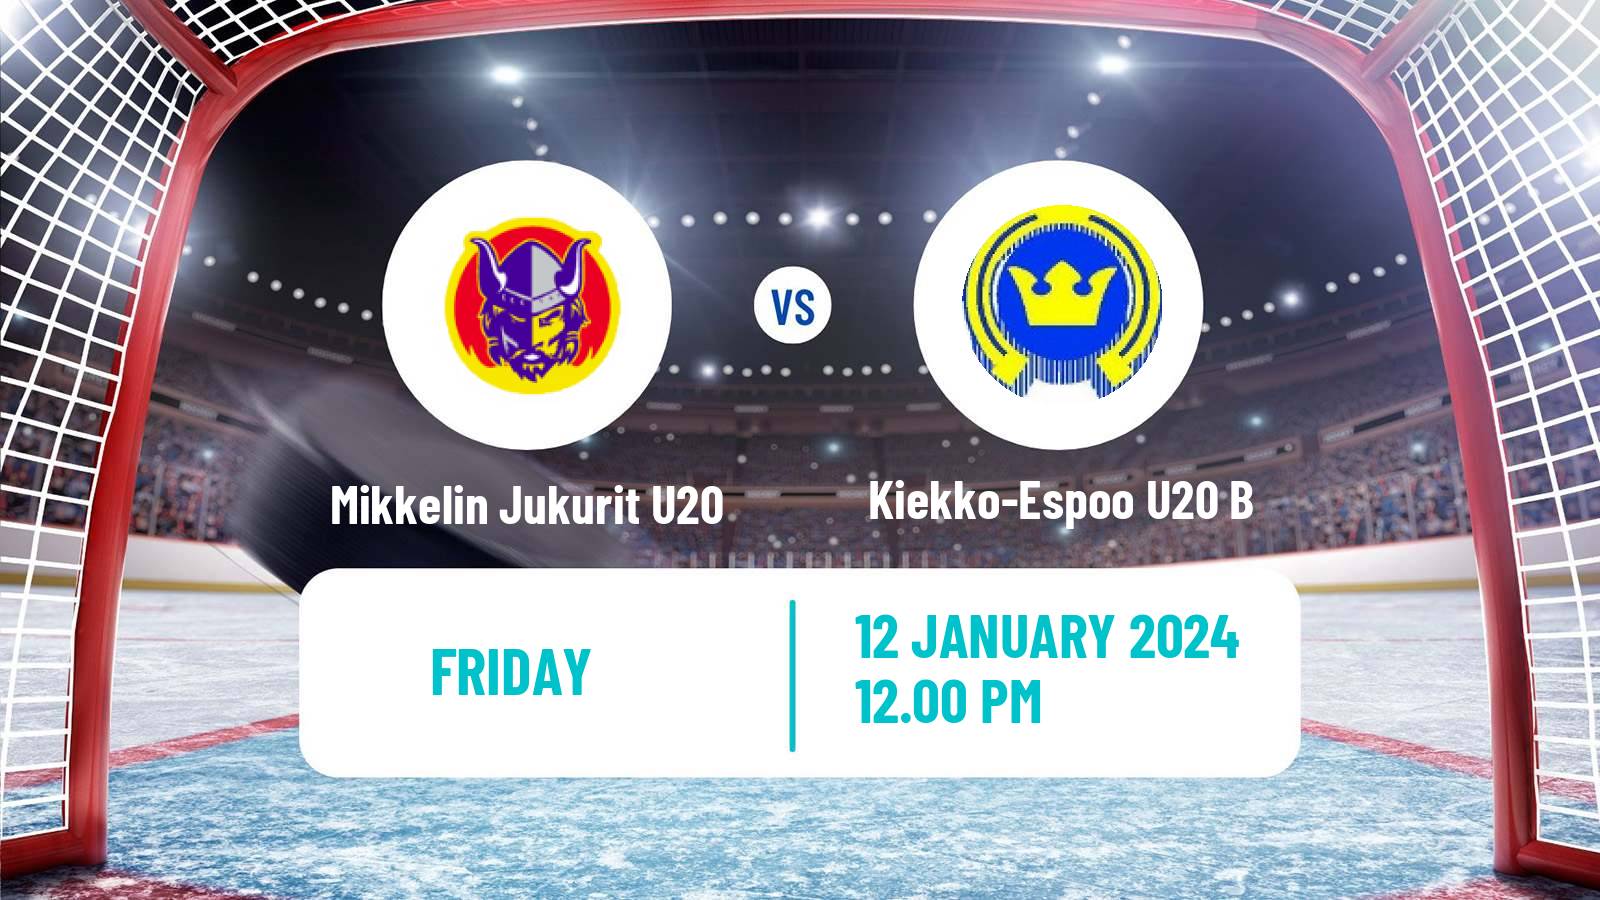 Hockey Finnish SM-sarja U20 Mikkelin Jukurit U20 - Kiekko-Espoo U20 B